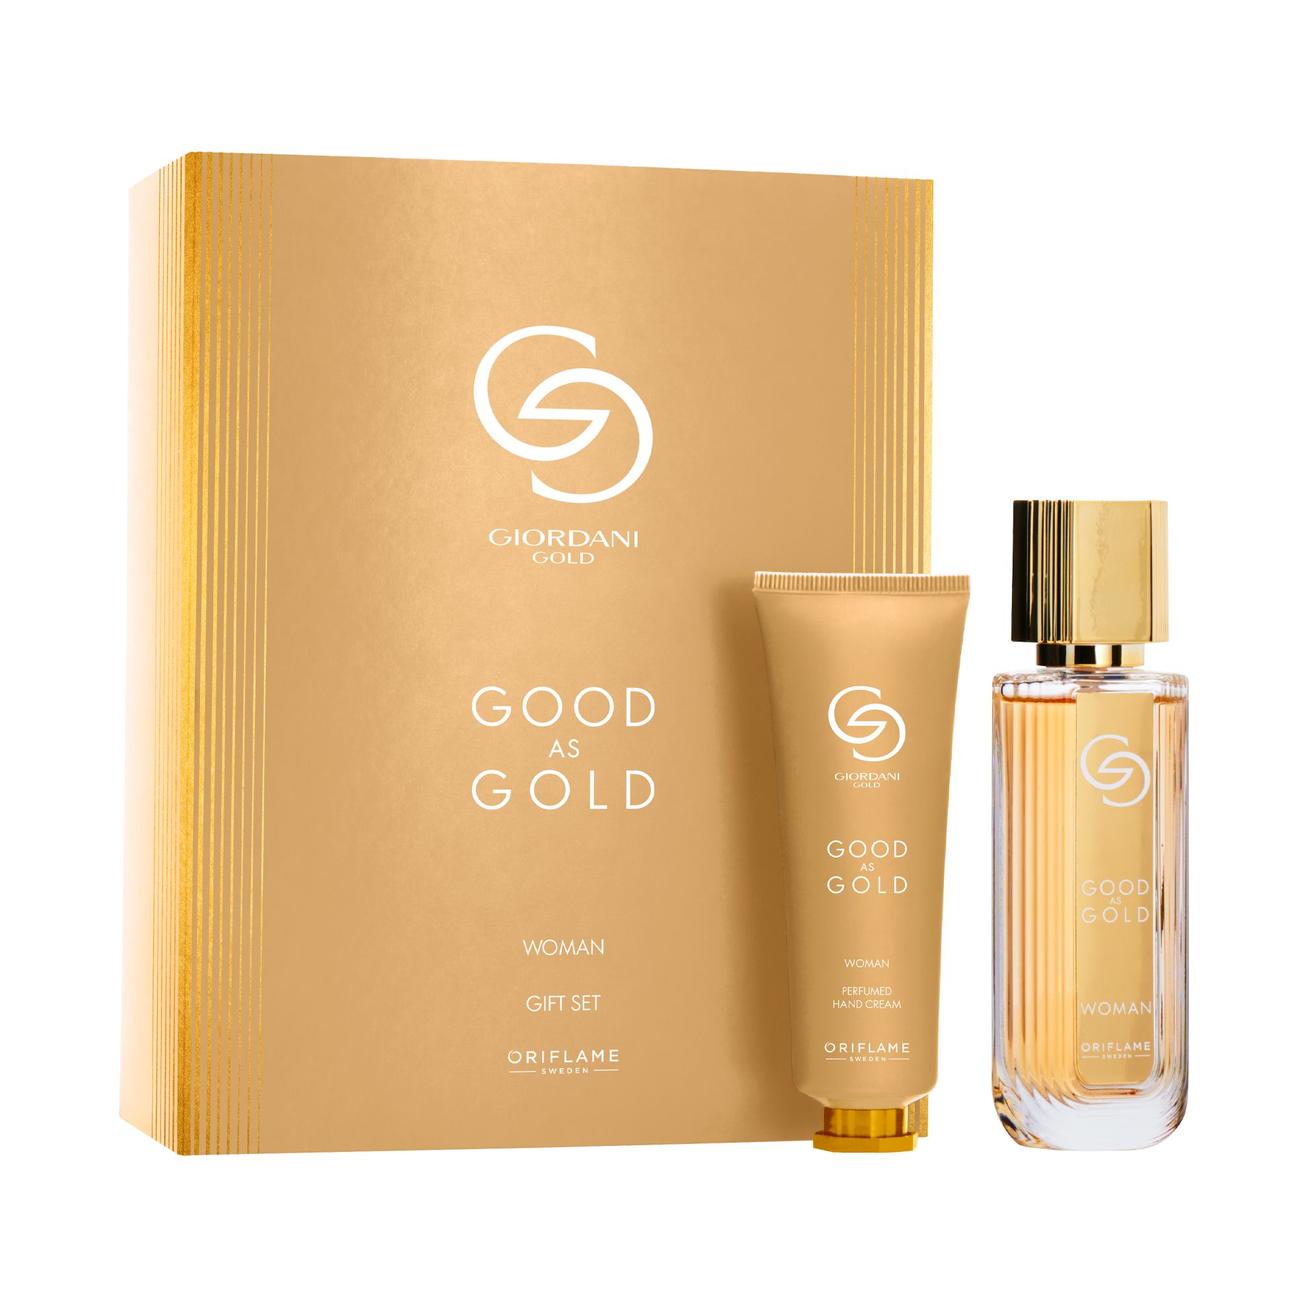 Aanbieding van Good as Gold Woman Gift Set voor 77,49€ bij Oriflame